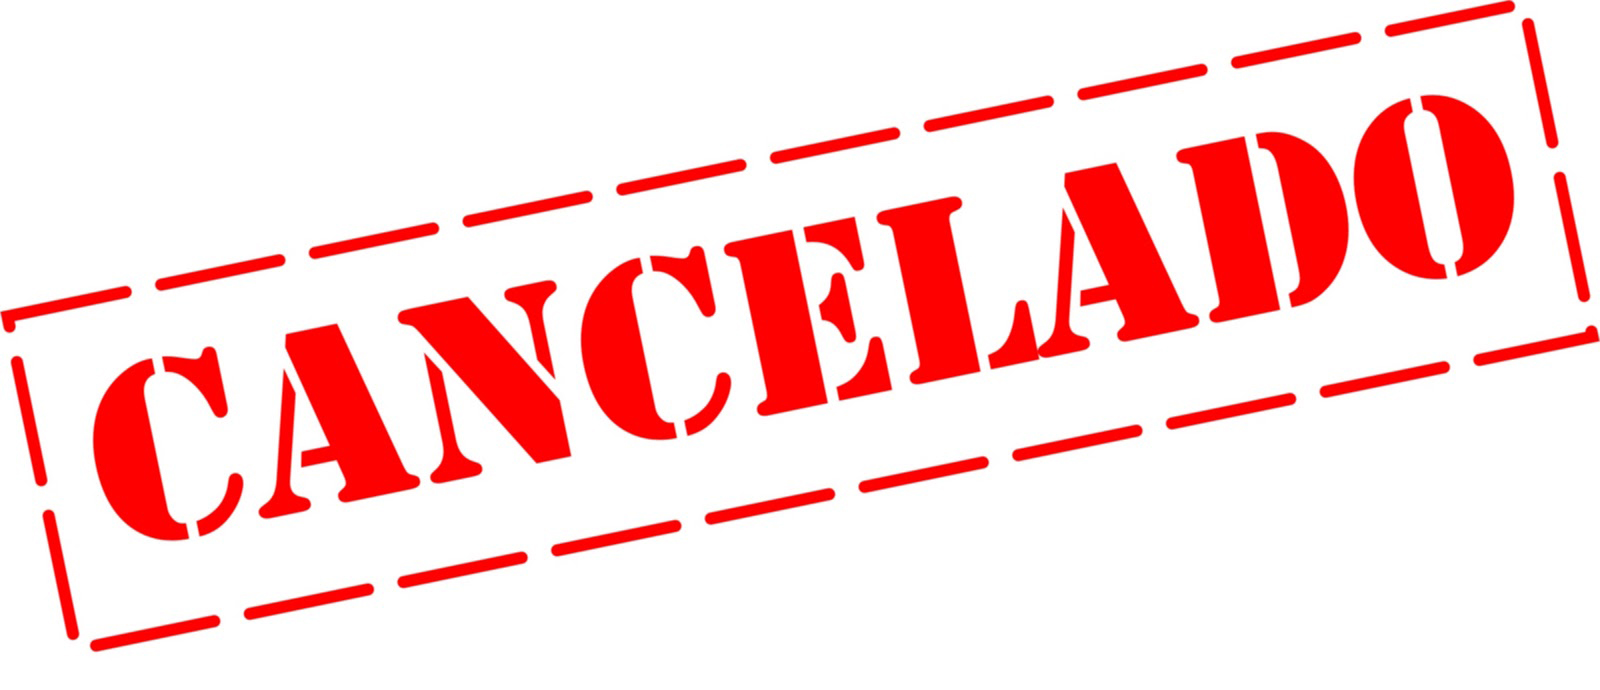 Cancelación de ruta del 07 de Noviembre de 2015  El Perro 